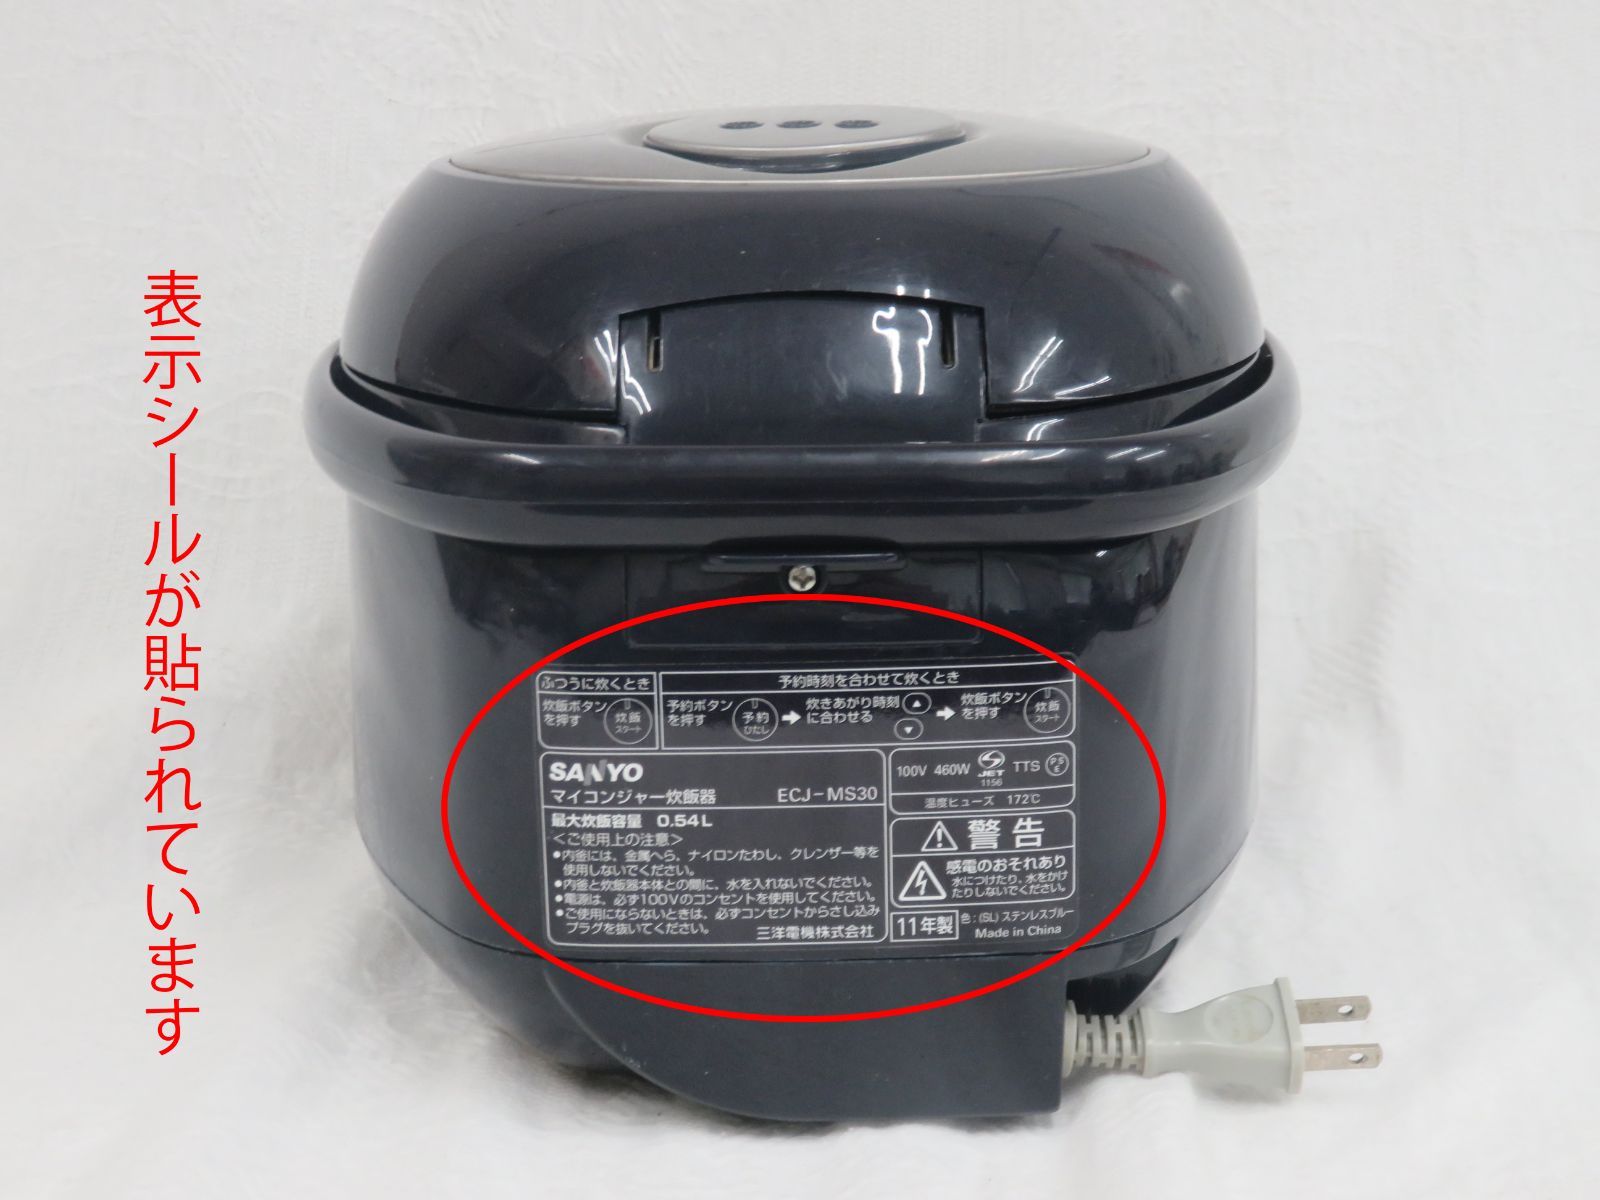 送料込み マイコンジャー炊飯器 ECJ-MS30 SANYO 3合炊き ジャンク品 COM'S SHOP メルカリ